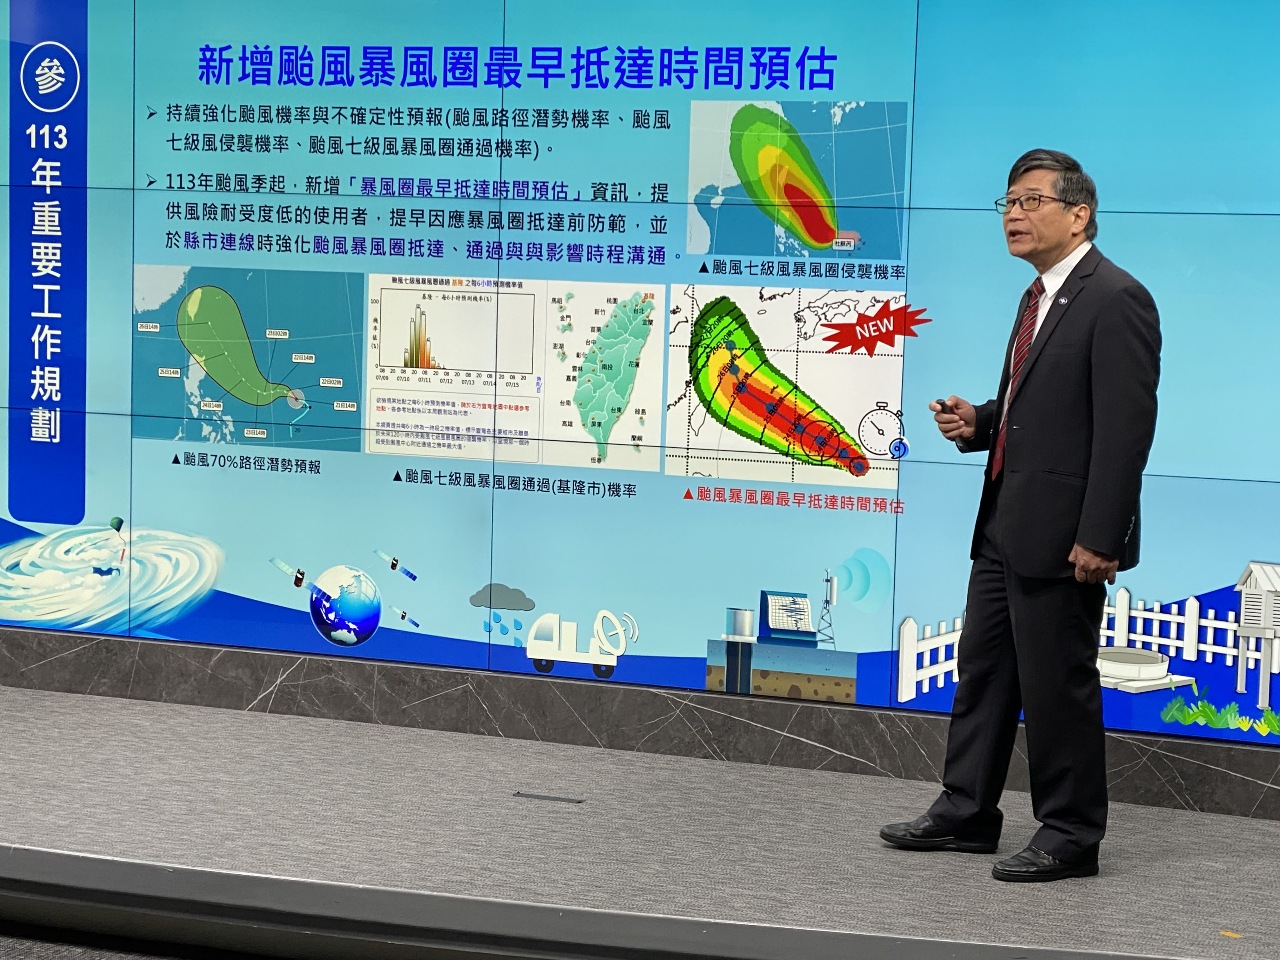 氣象預報將有多項變革 新增颱風暴風圈最早抵達時間